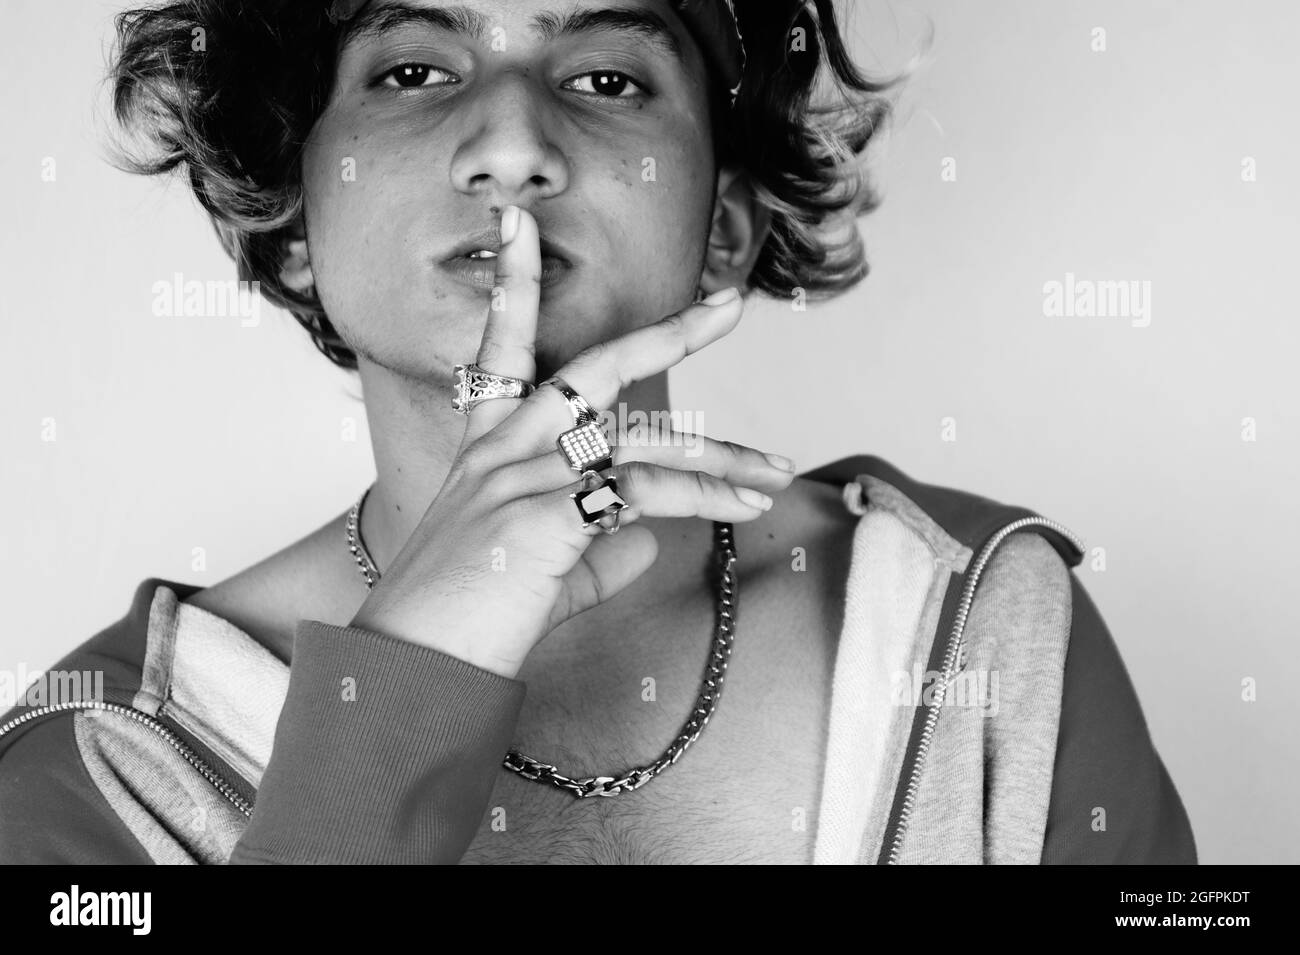 Photo en niveaux de gris d'un type indien frais portant un bandana et des anneaux tenant un doigt sur les lèvres Banque D'Images